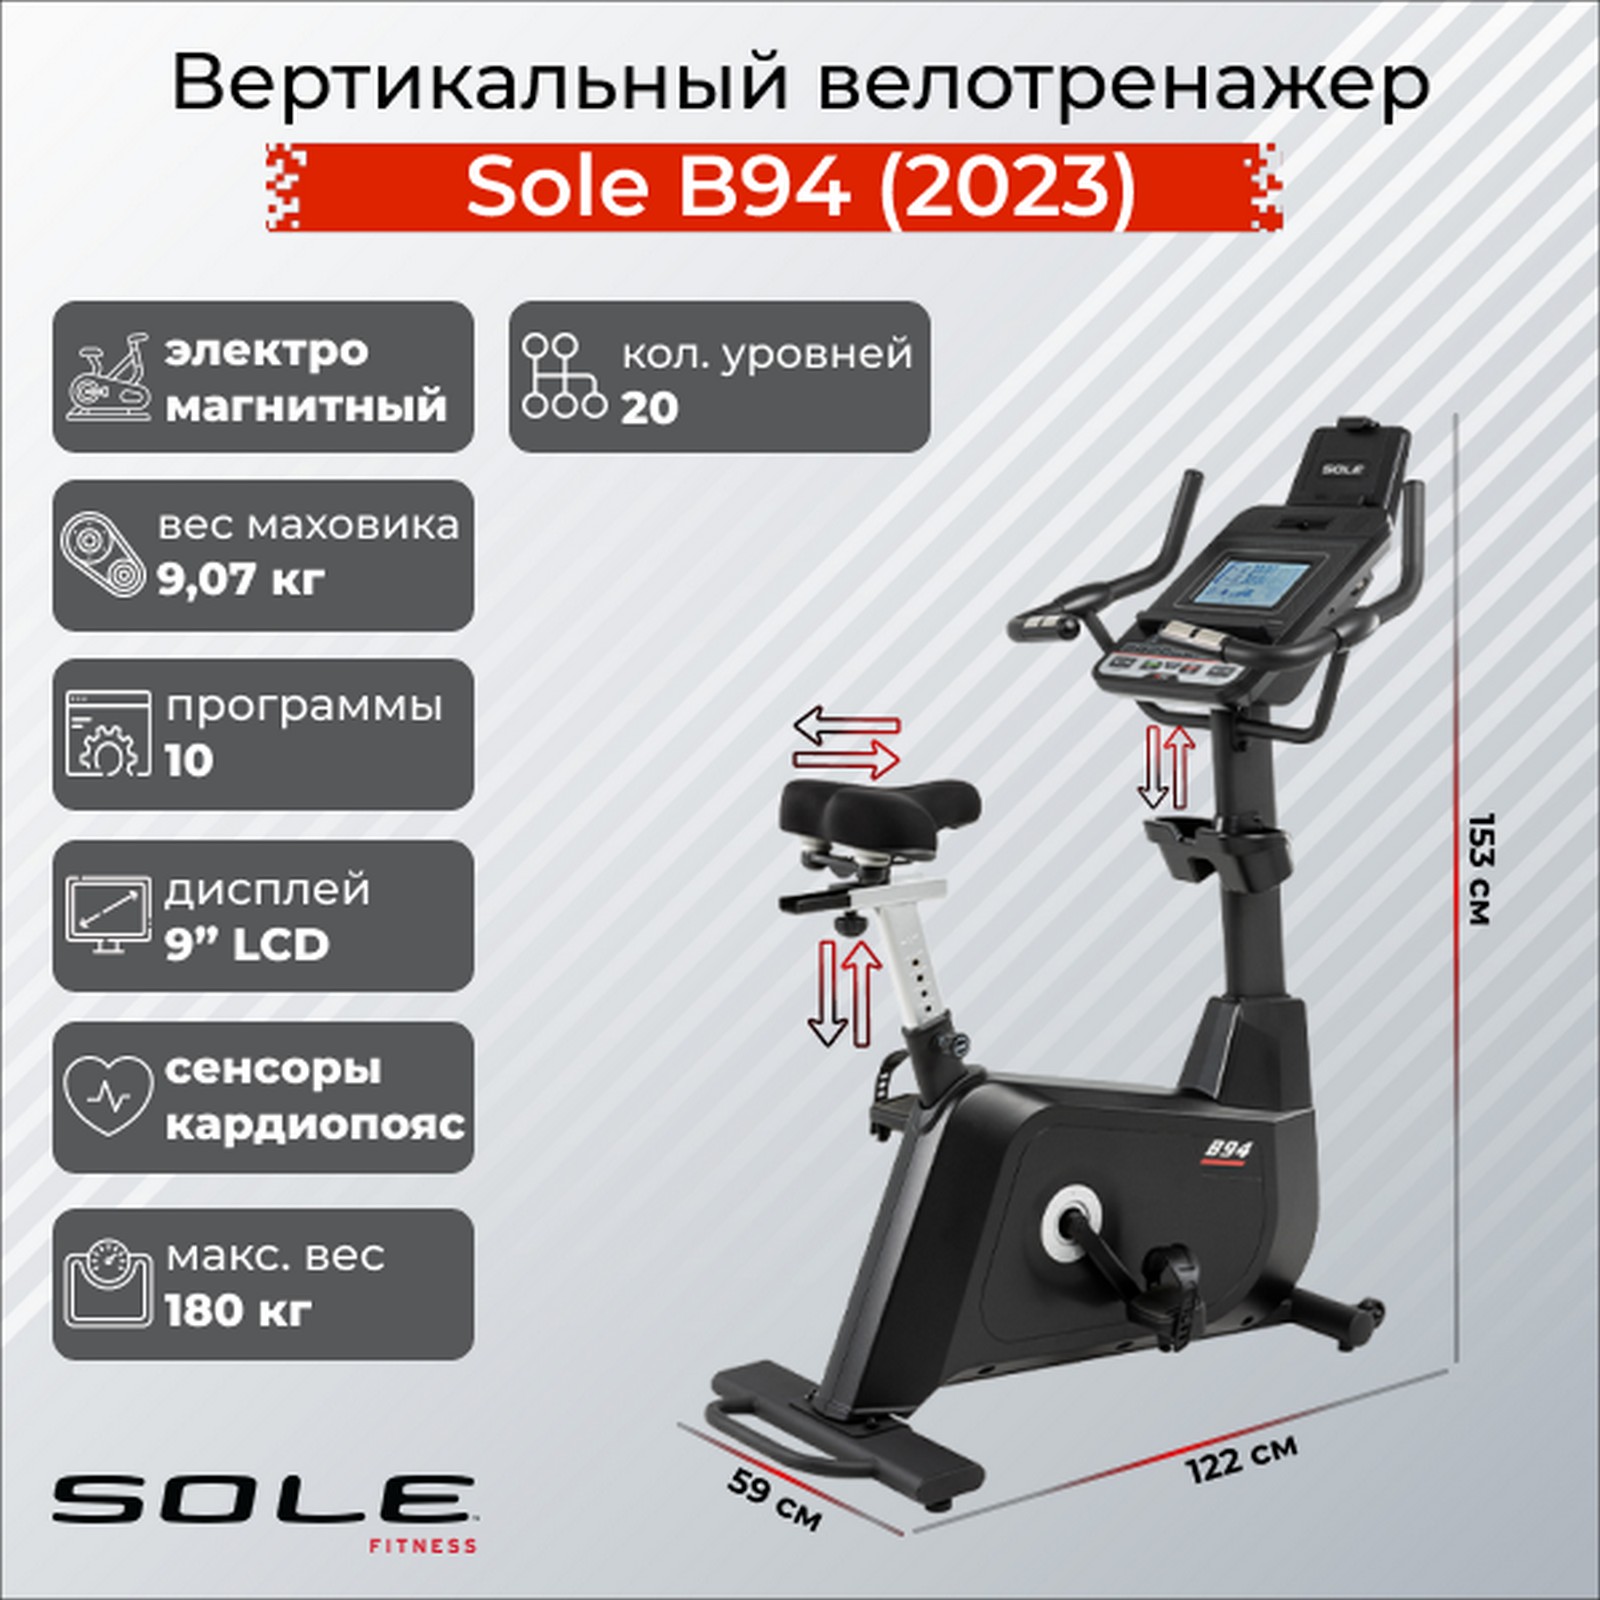 Вертикальный велотренажер Sole Fitness B94 2023 1600_1600